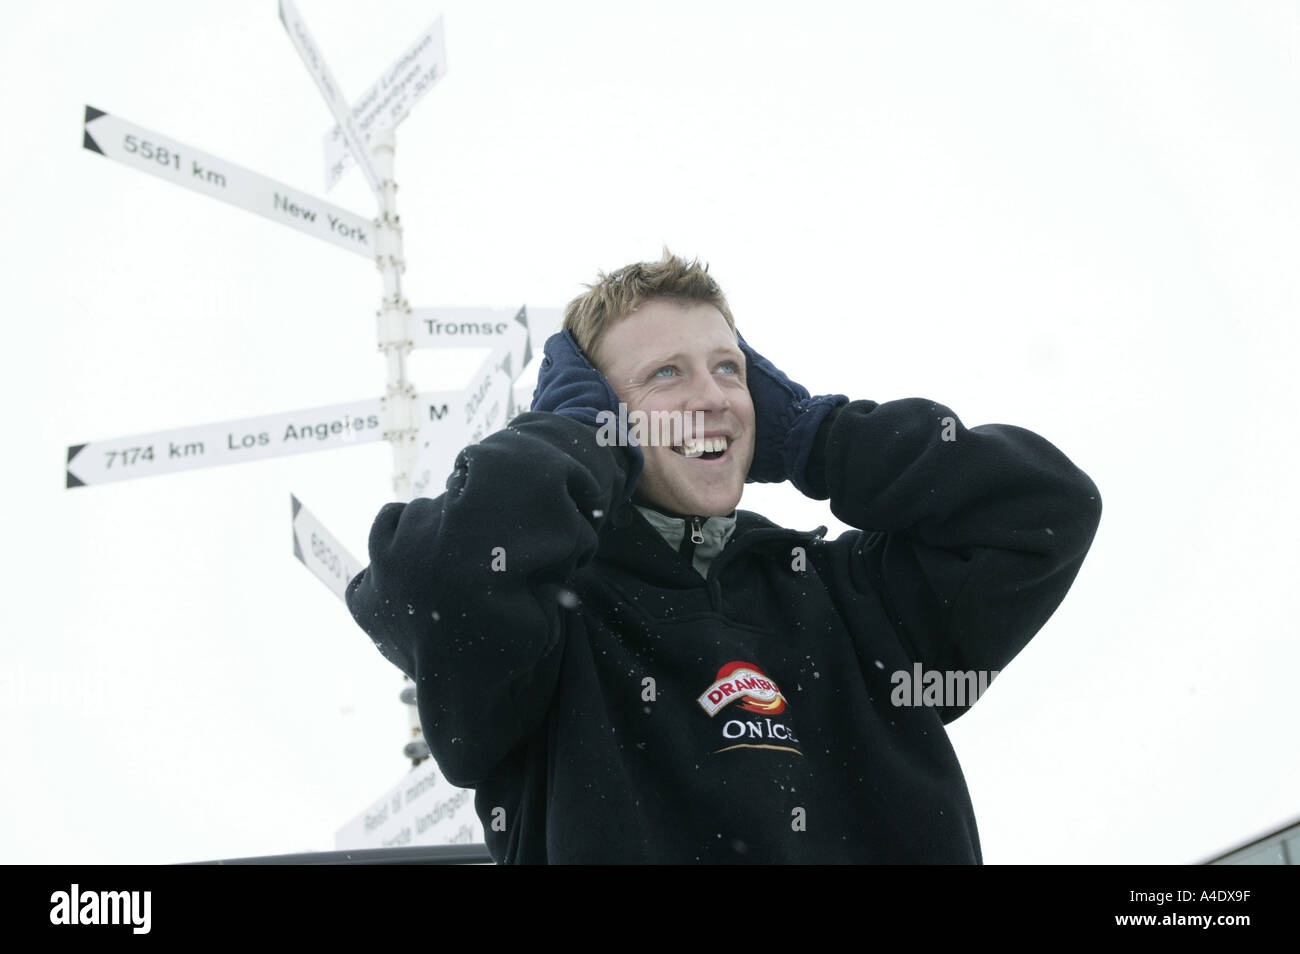 John Wells  - UK winner of the 2004 Drambuie ice golf championship in Svalbard, Norway. Stock Photo